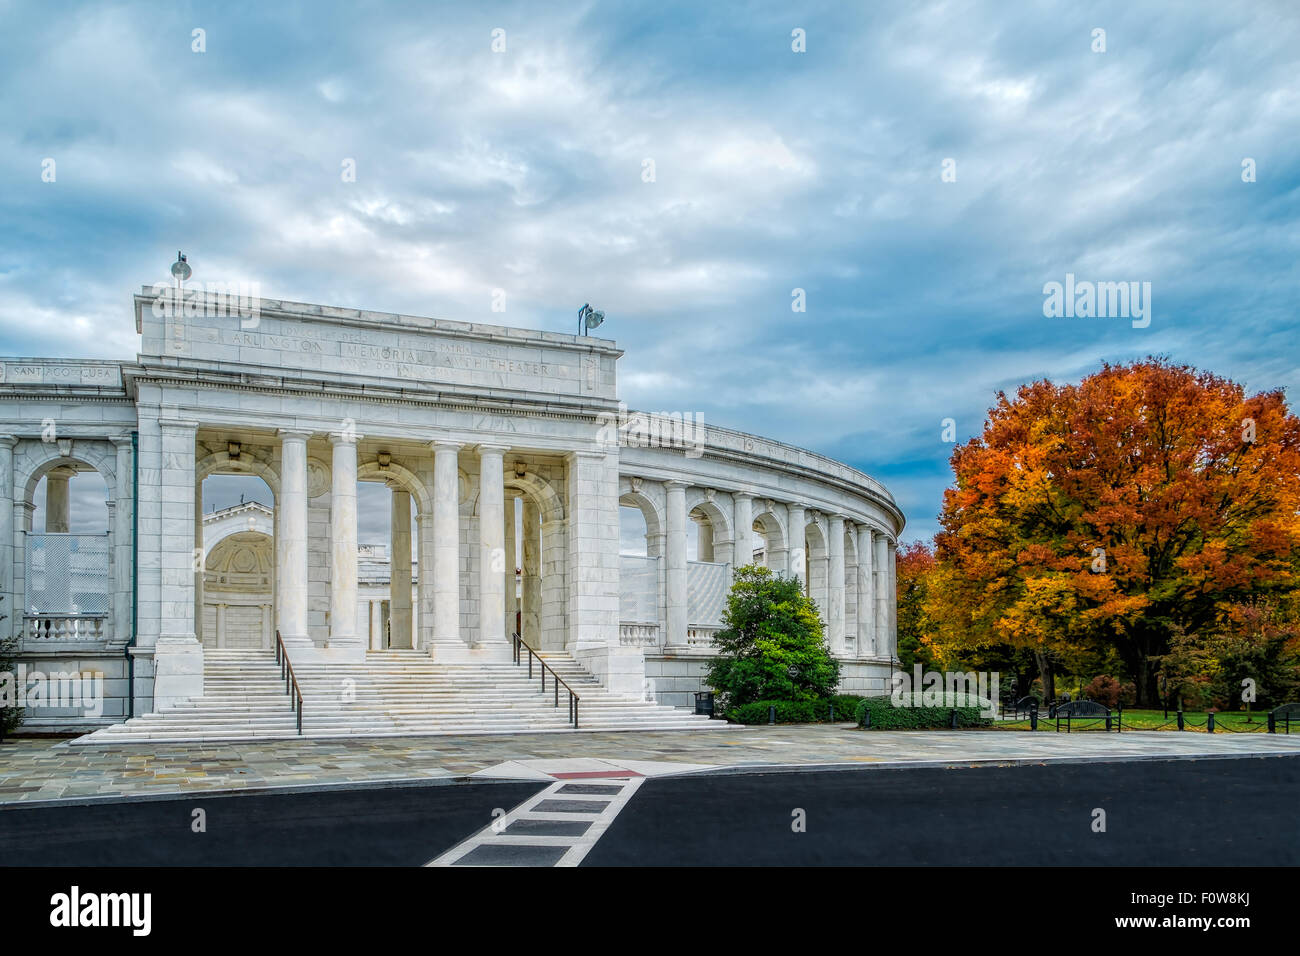 Vista esterna dell'Arlington Memorial anfiteatro durante un picco di caduta delle foglie nel pomeriggio. Foto Stock